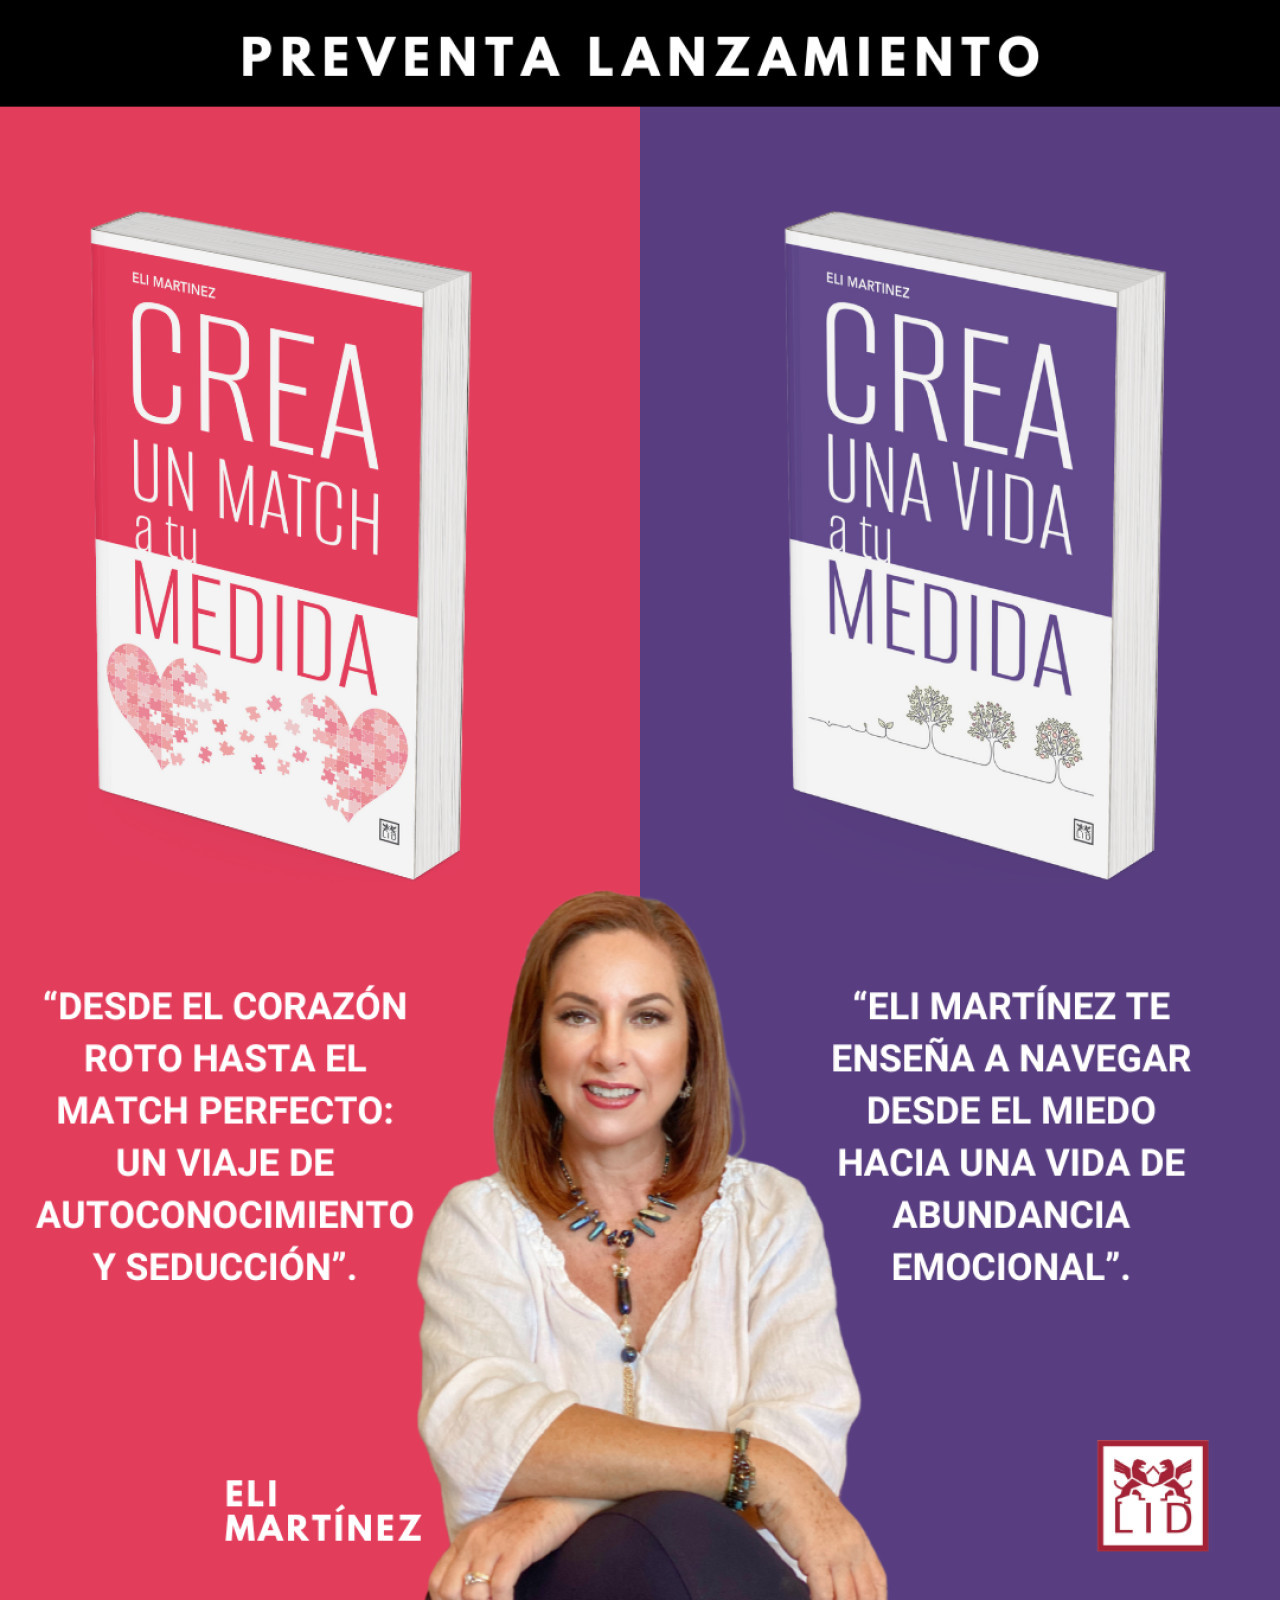 Eli Martínez presenta "Crea una vida a tu medida" y "Crea un match a tu medida".